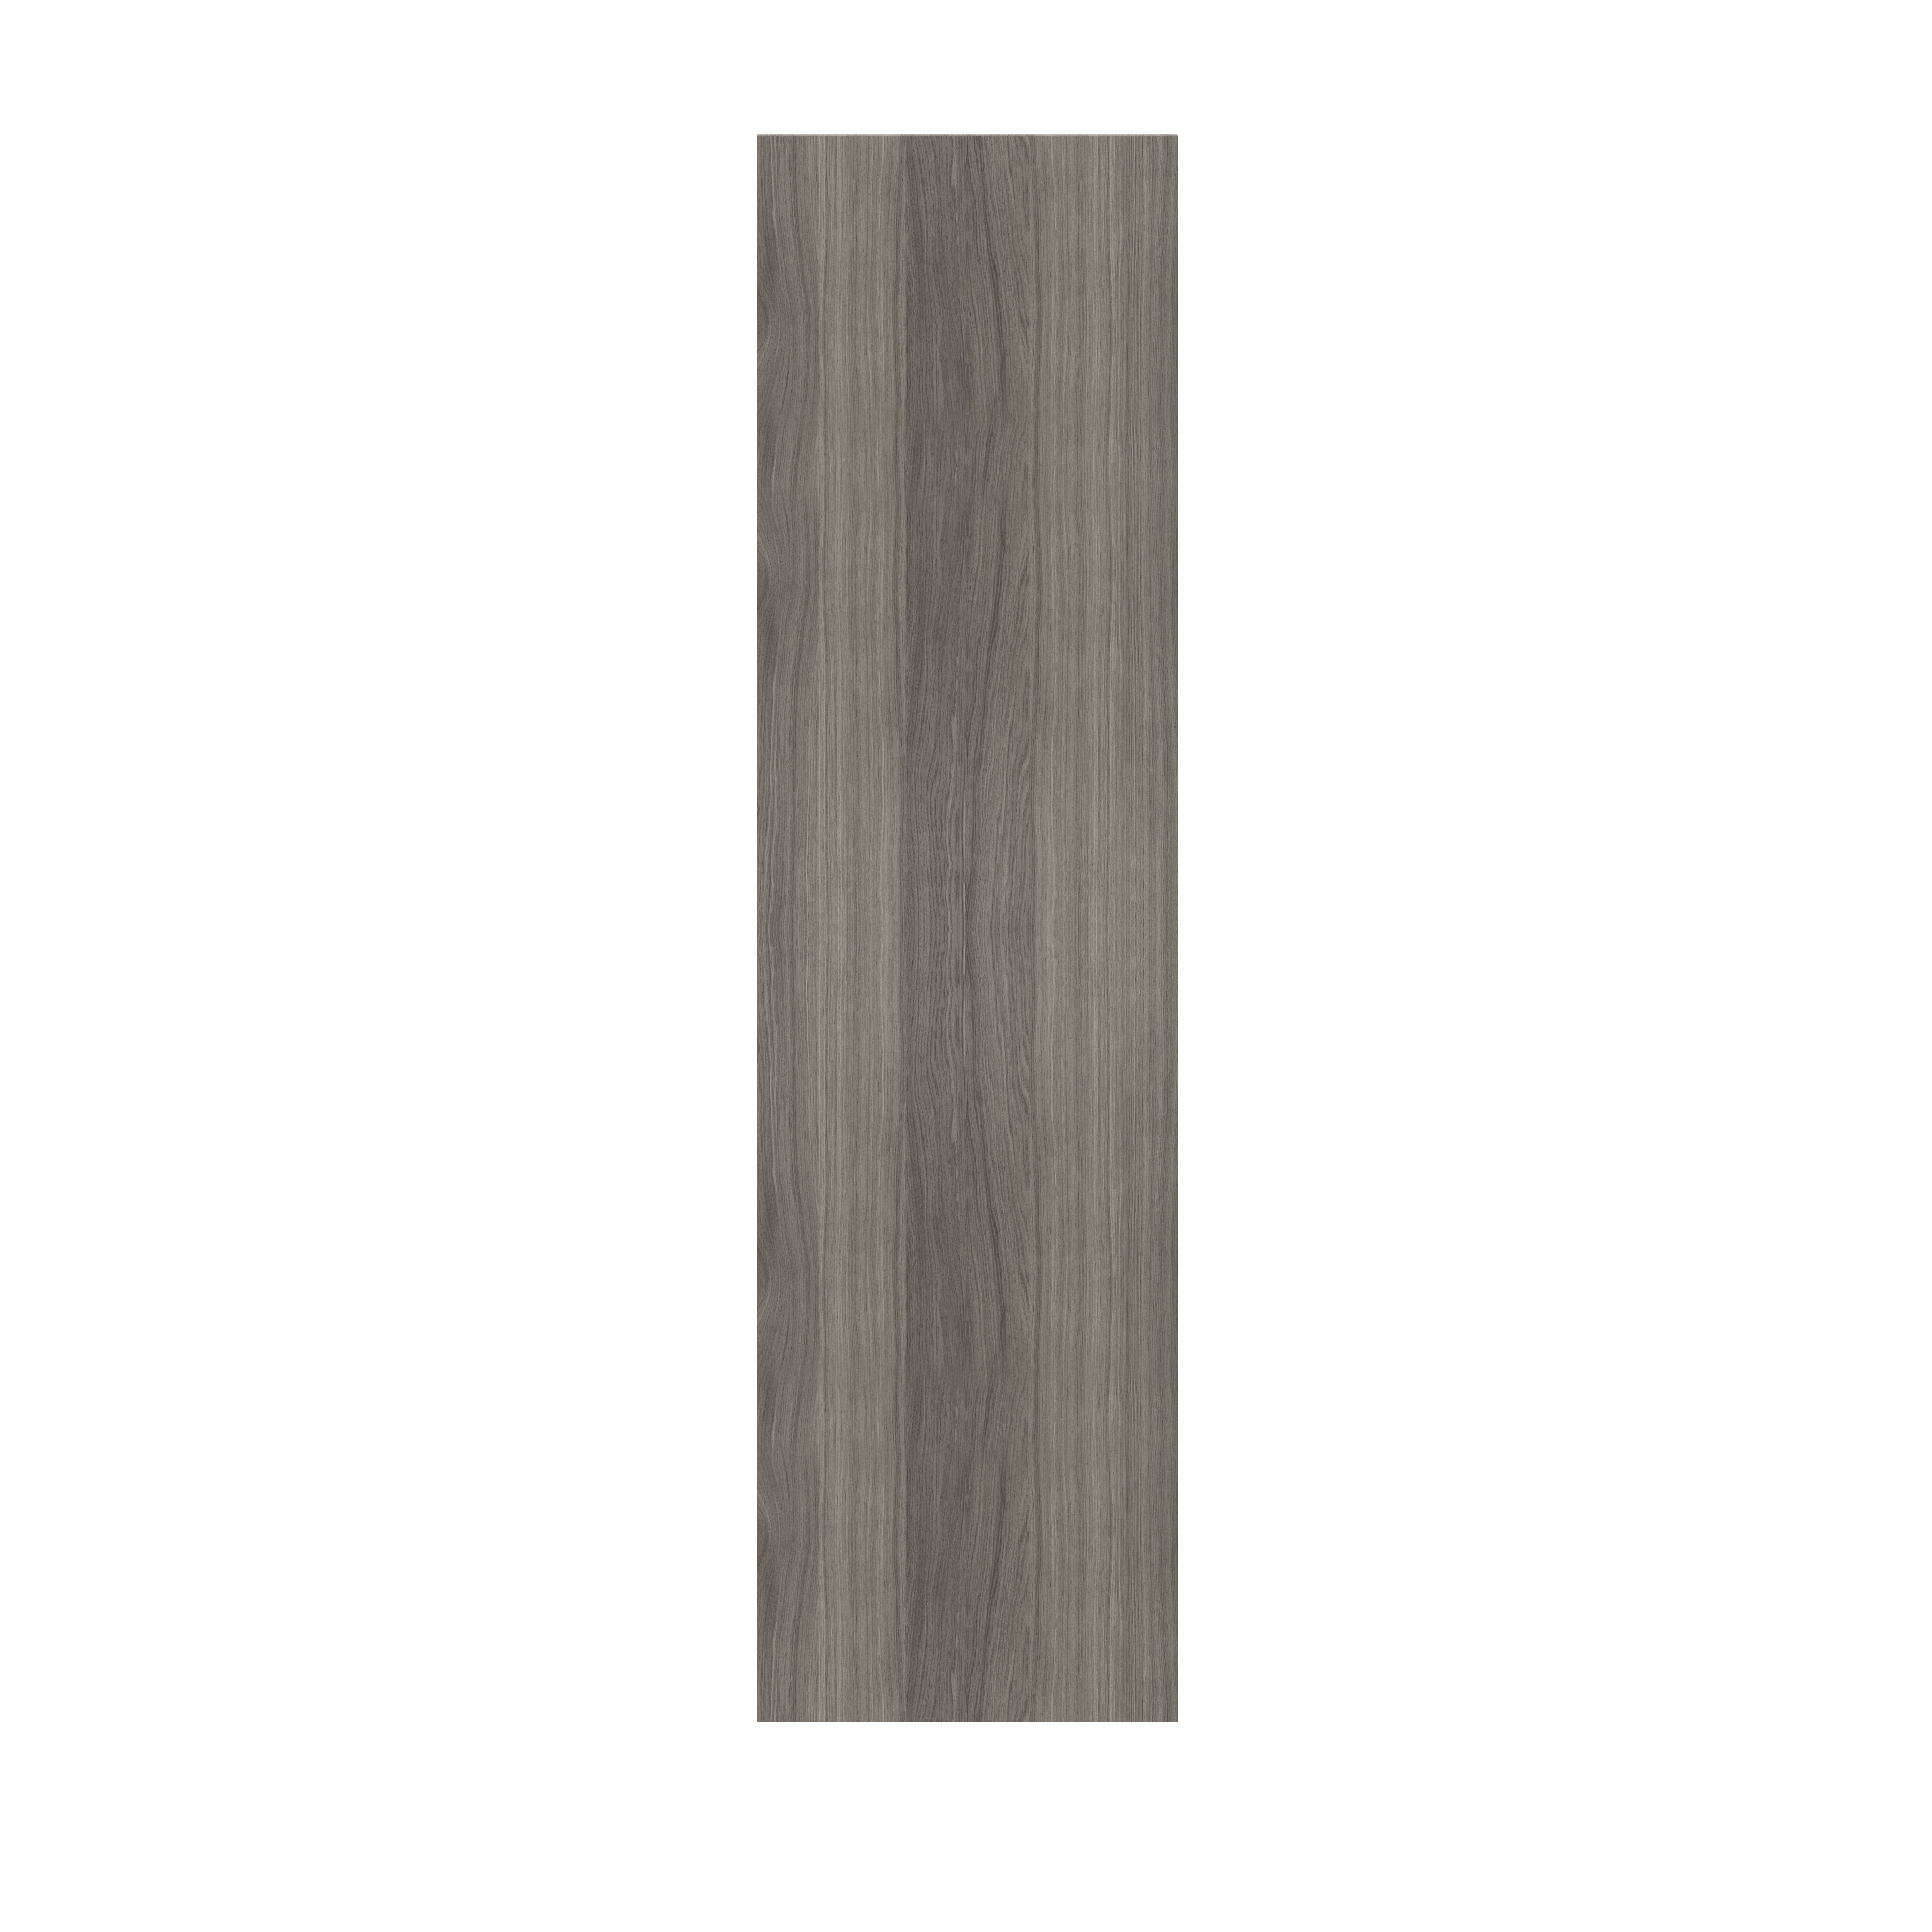 GoodHome Atomia Matt Grey oak effect Grey oak Non-mirrored Modular furniture door, (H) 1872mm (W) 497mm